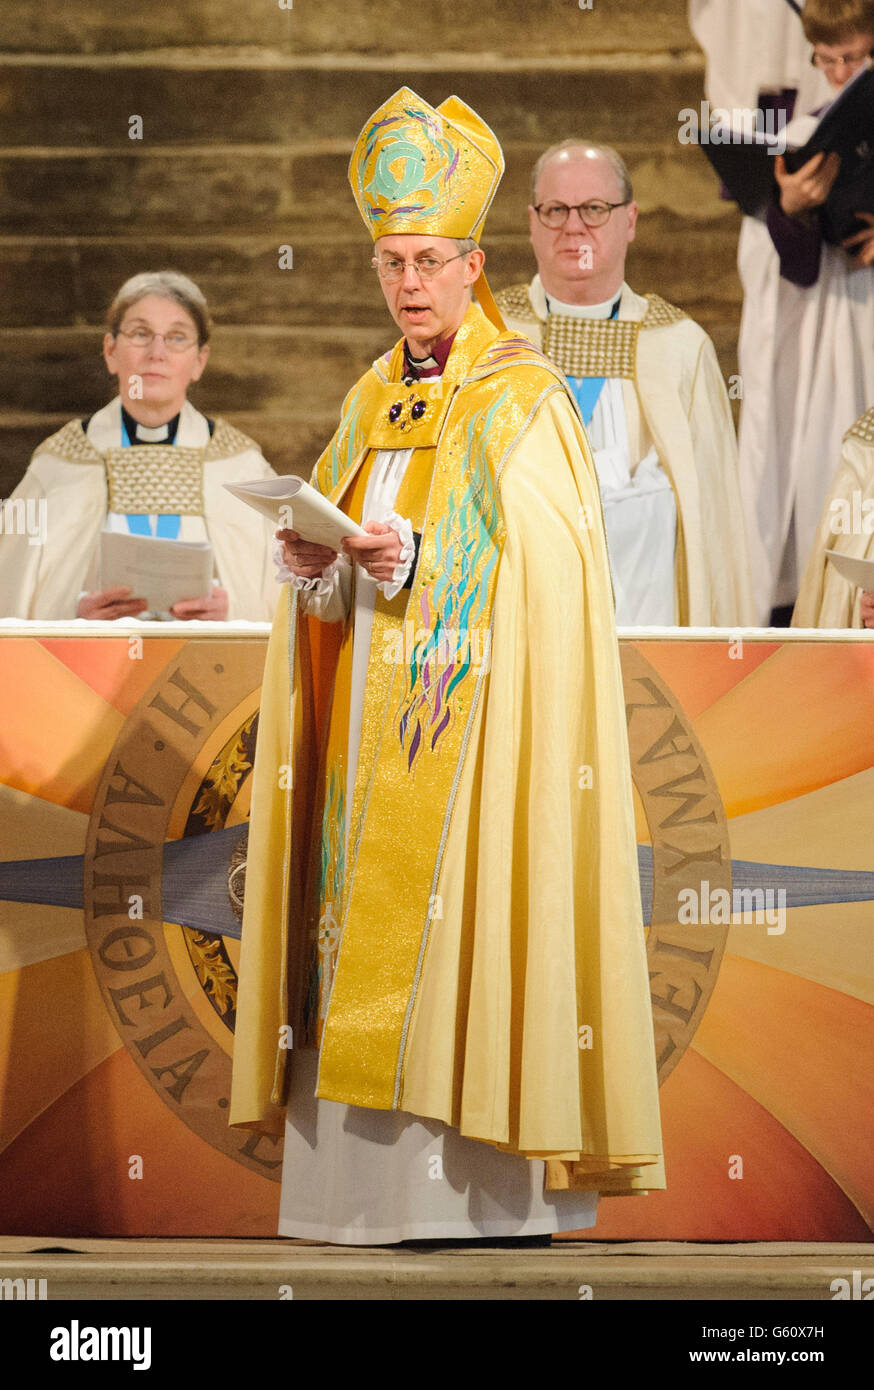 Der Erzbischof von Canterbury Most Reverend Justin Welby wird während eines Dienstes in der Kathedrale von Canterbury in Canterbury, Kent, auf den Thron gesetzt. Stockfoto